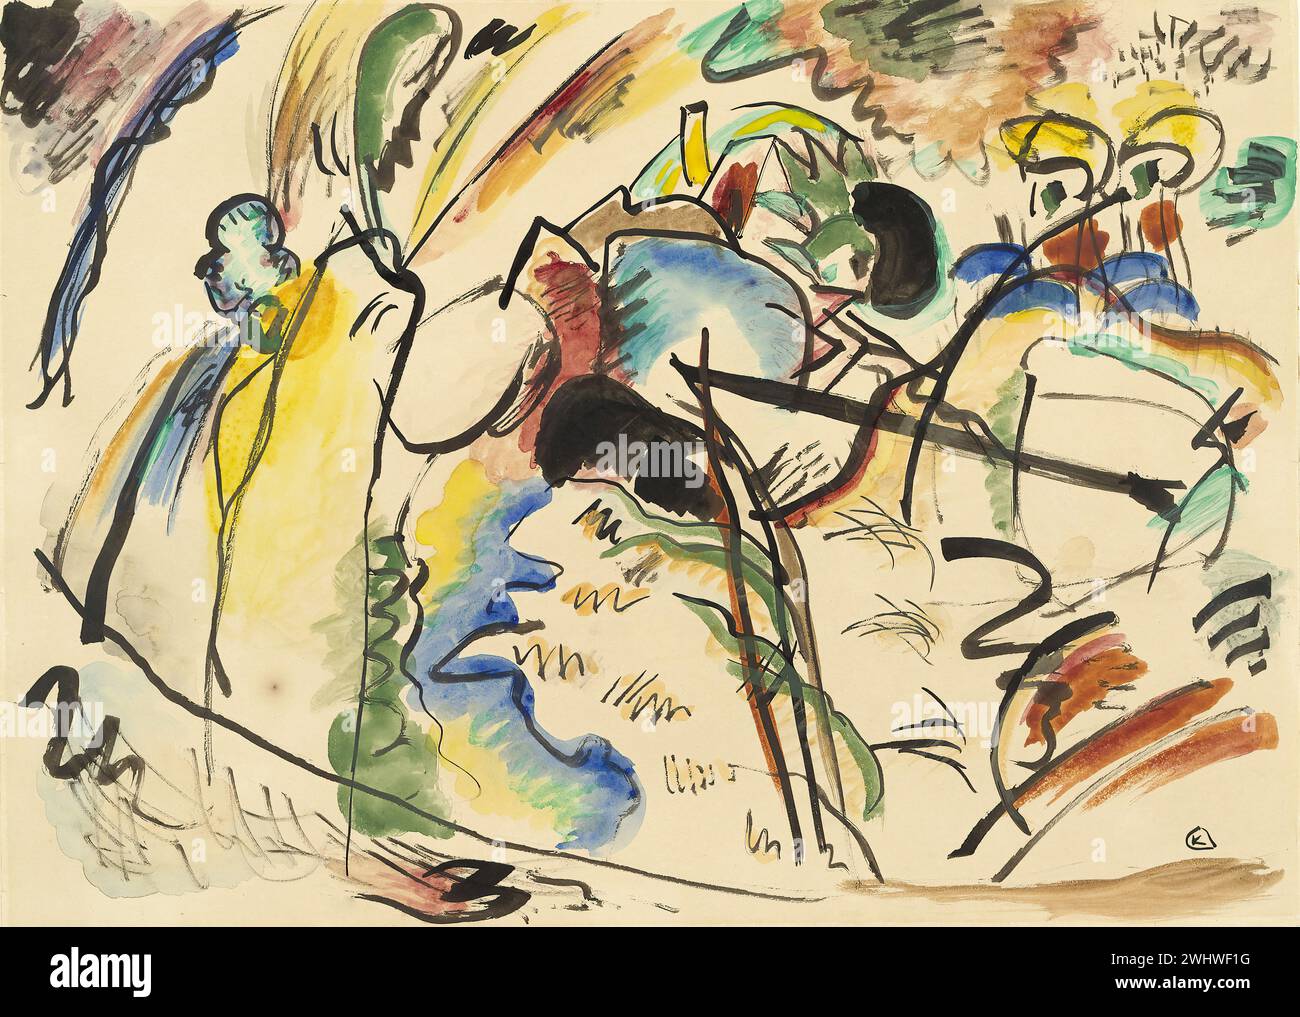 Vassily Kandinsky - Etude pour la peinture avec une forme blanche Stockfoto